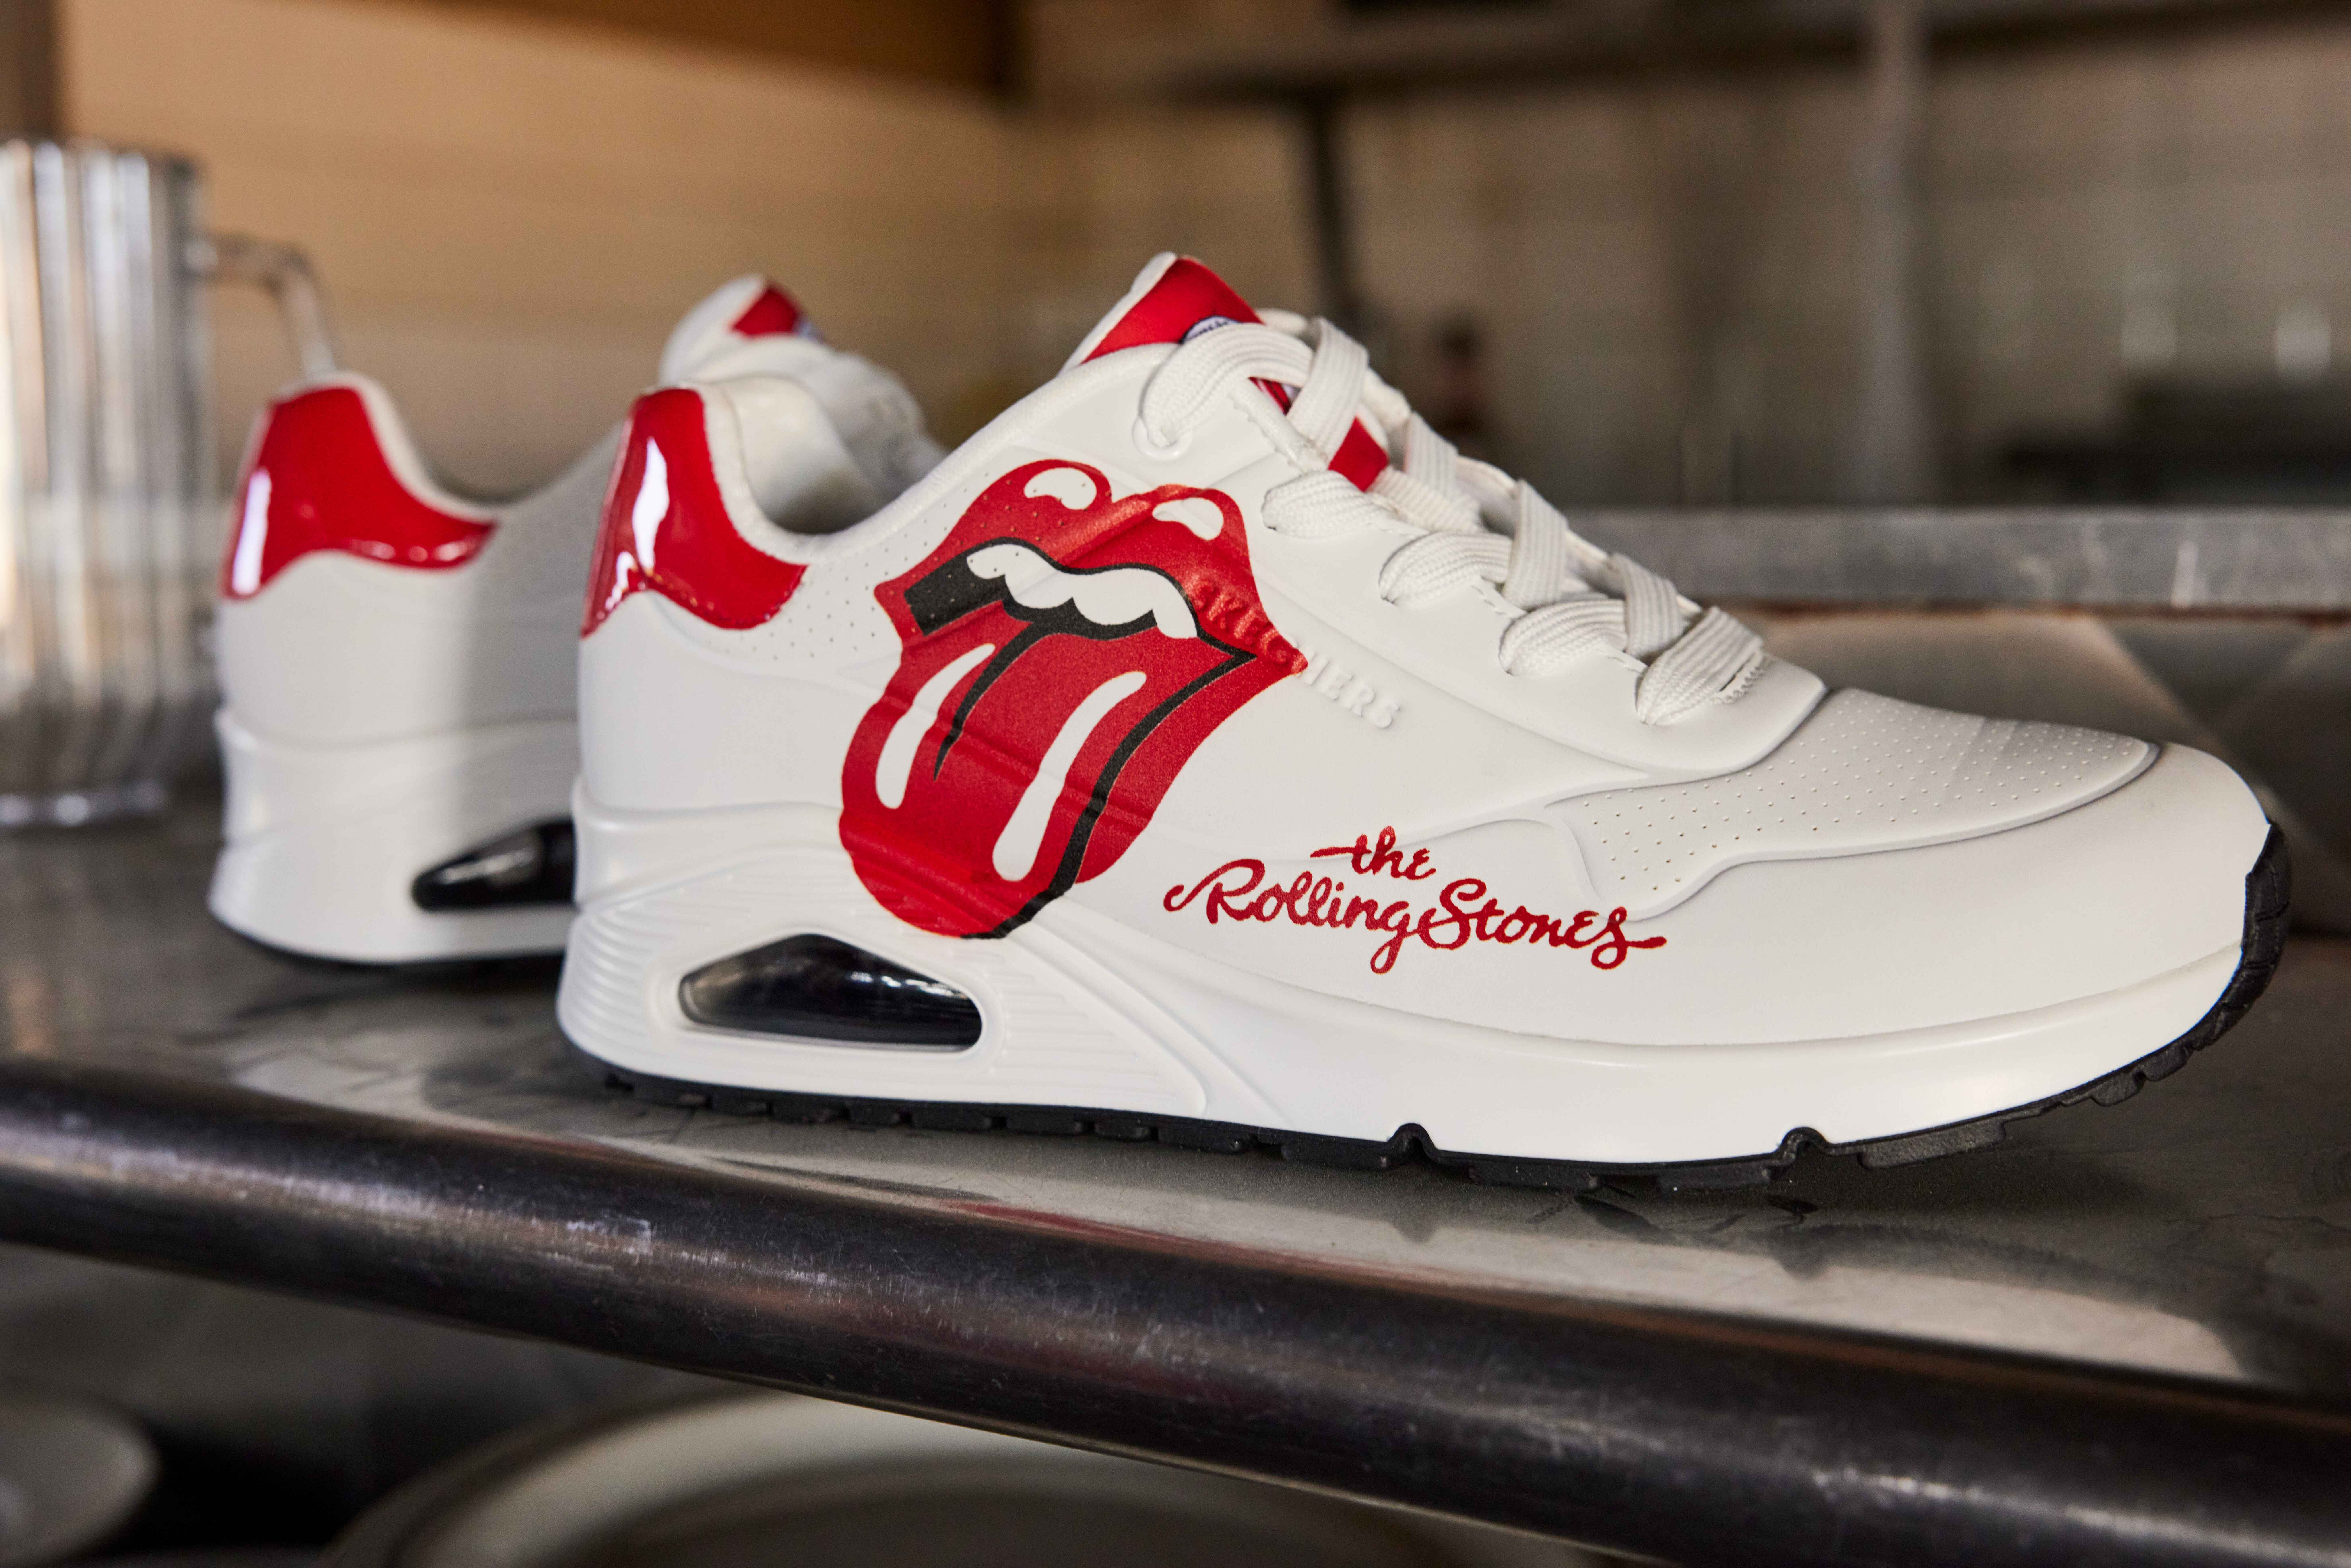 Skechers Guncang Kolaborasi Terbaru Dengan The Rolling Stones